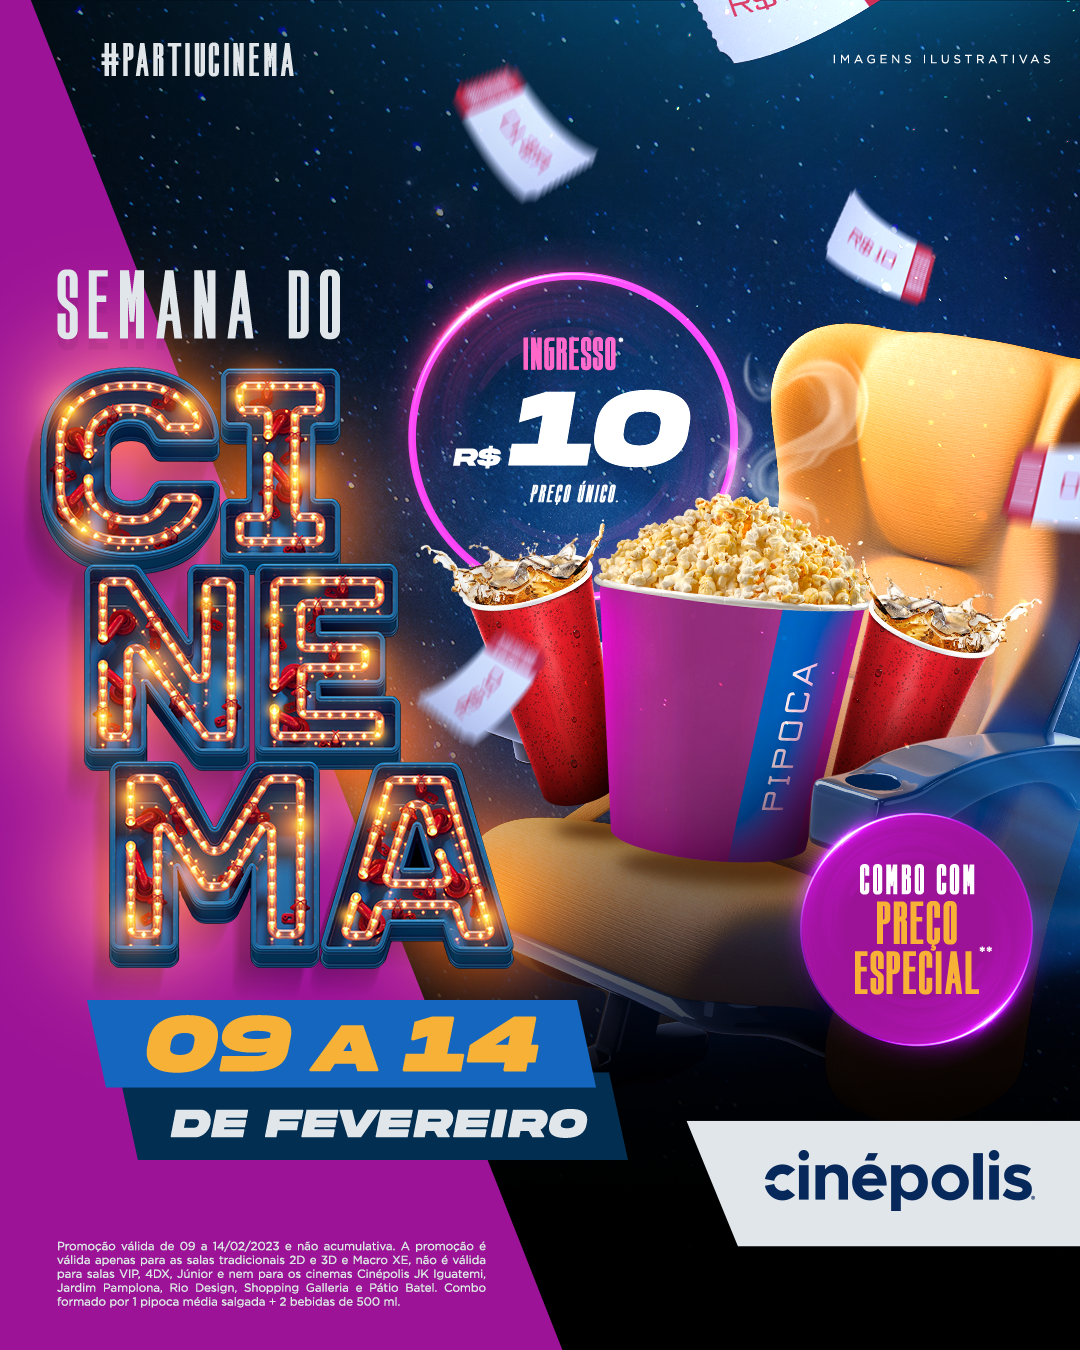 Cinépolis participa de mais uma edição da Semana do Cinema com ingressos a R$10,00